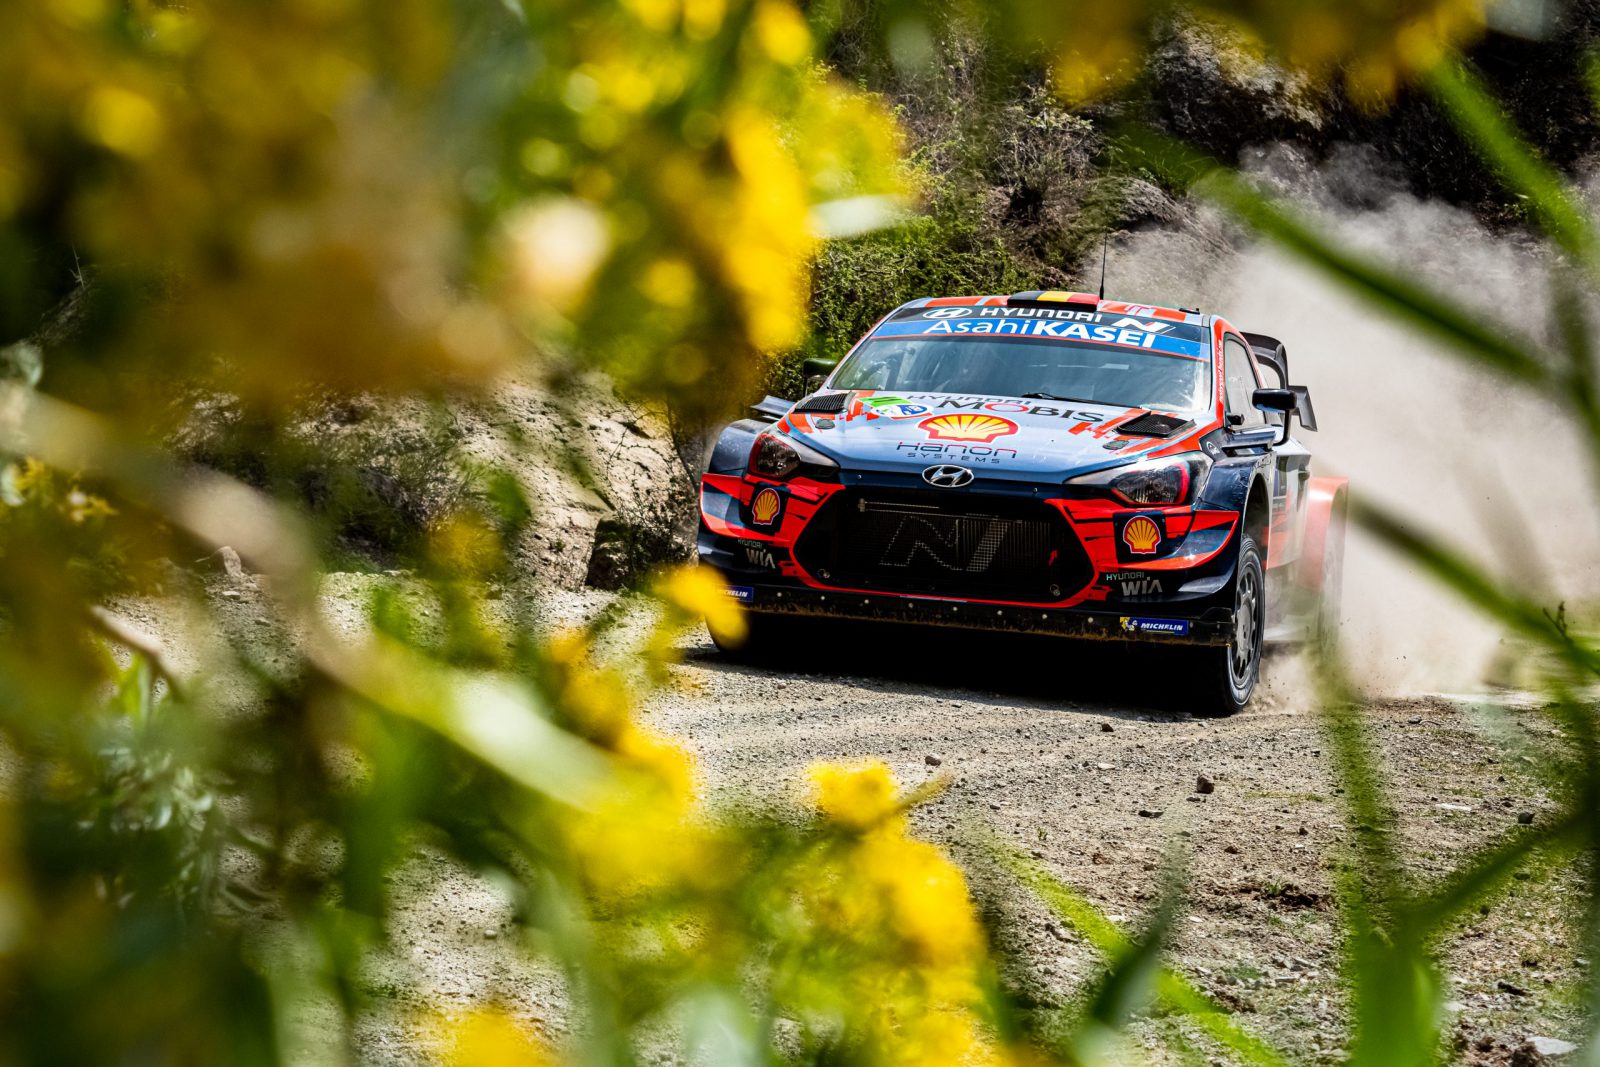 El Rally Guanajuato Corona se ausenta en 2021 y asegura su presencia en el WRC para 2022 y 2023